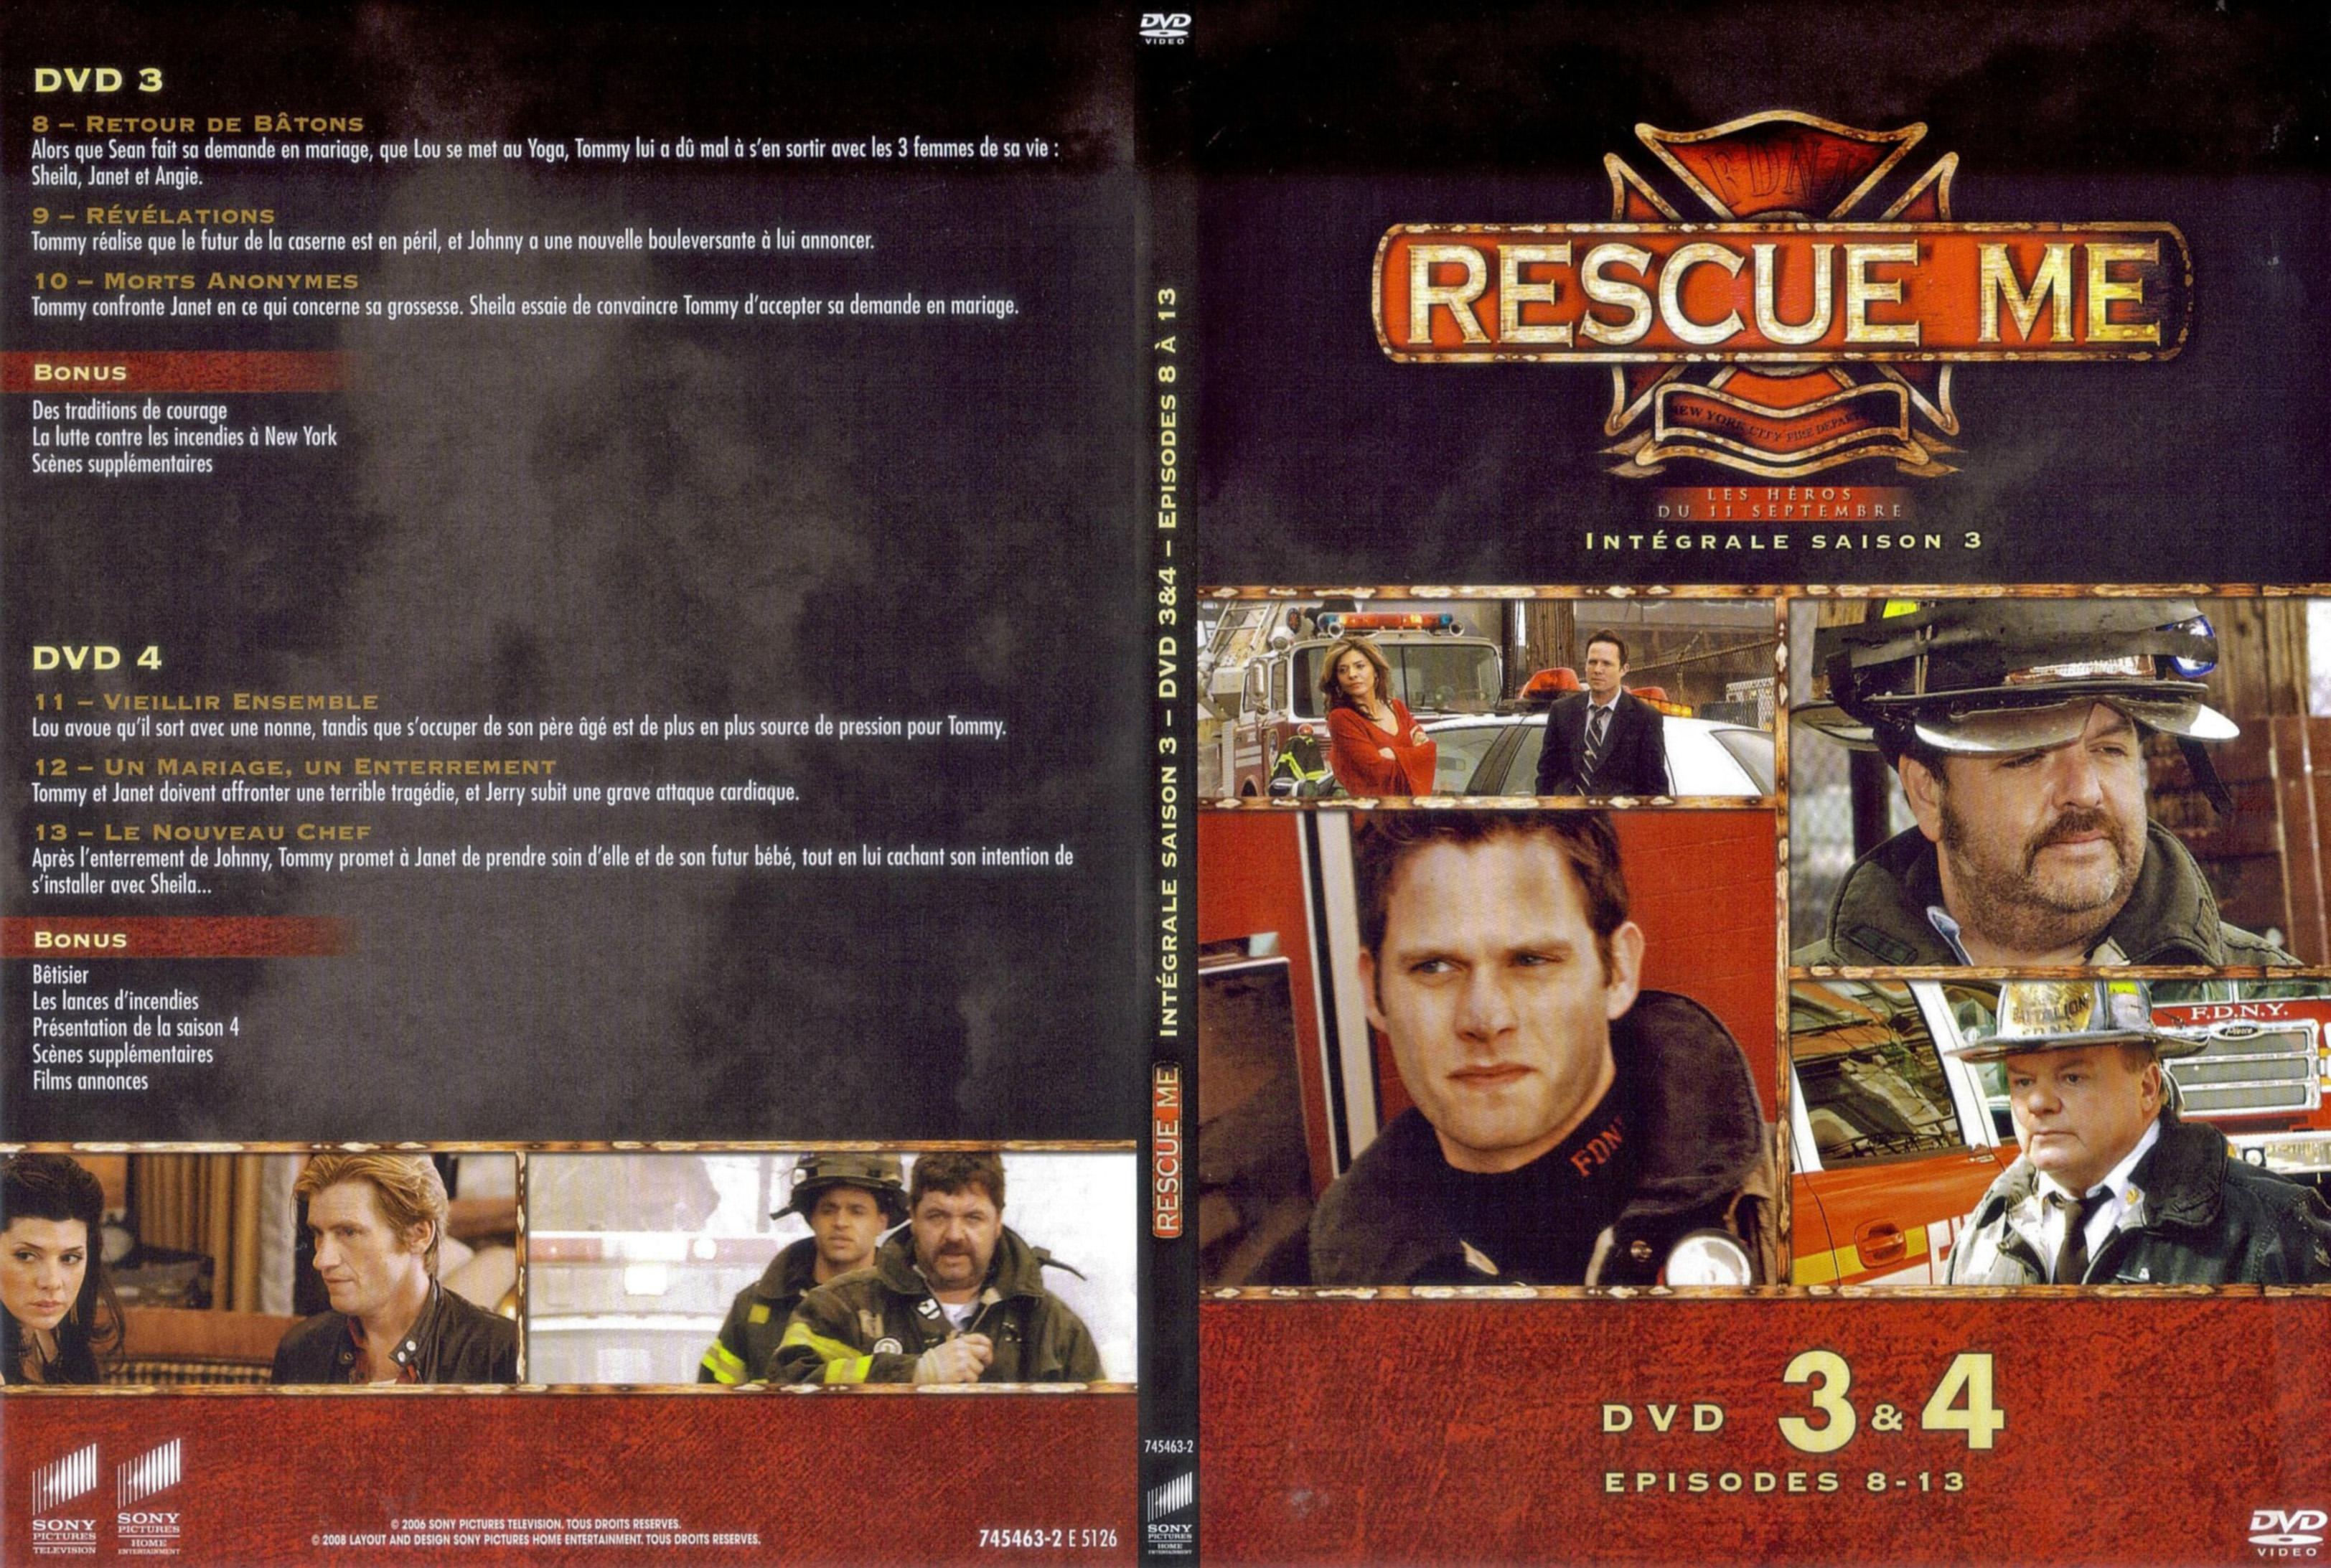 Jaquette DVD Rescue me Saison 3 DVD 3-4